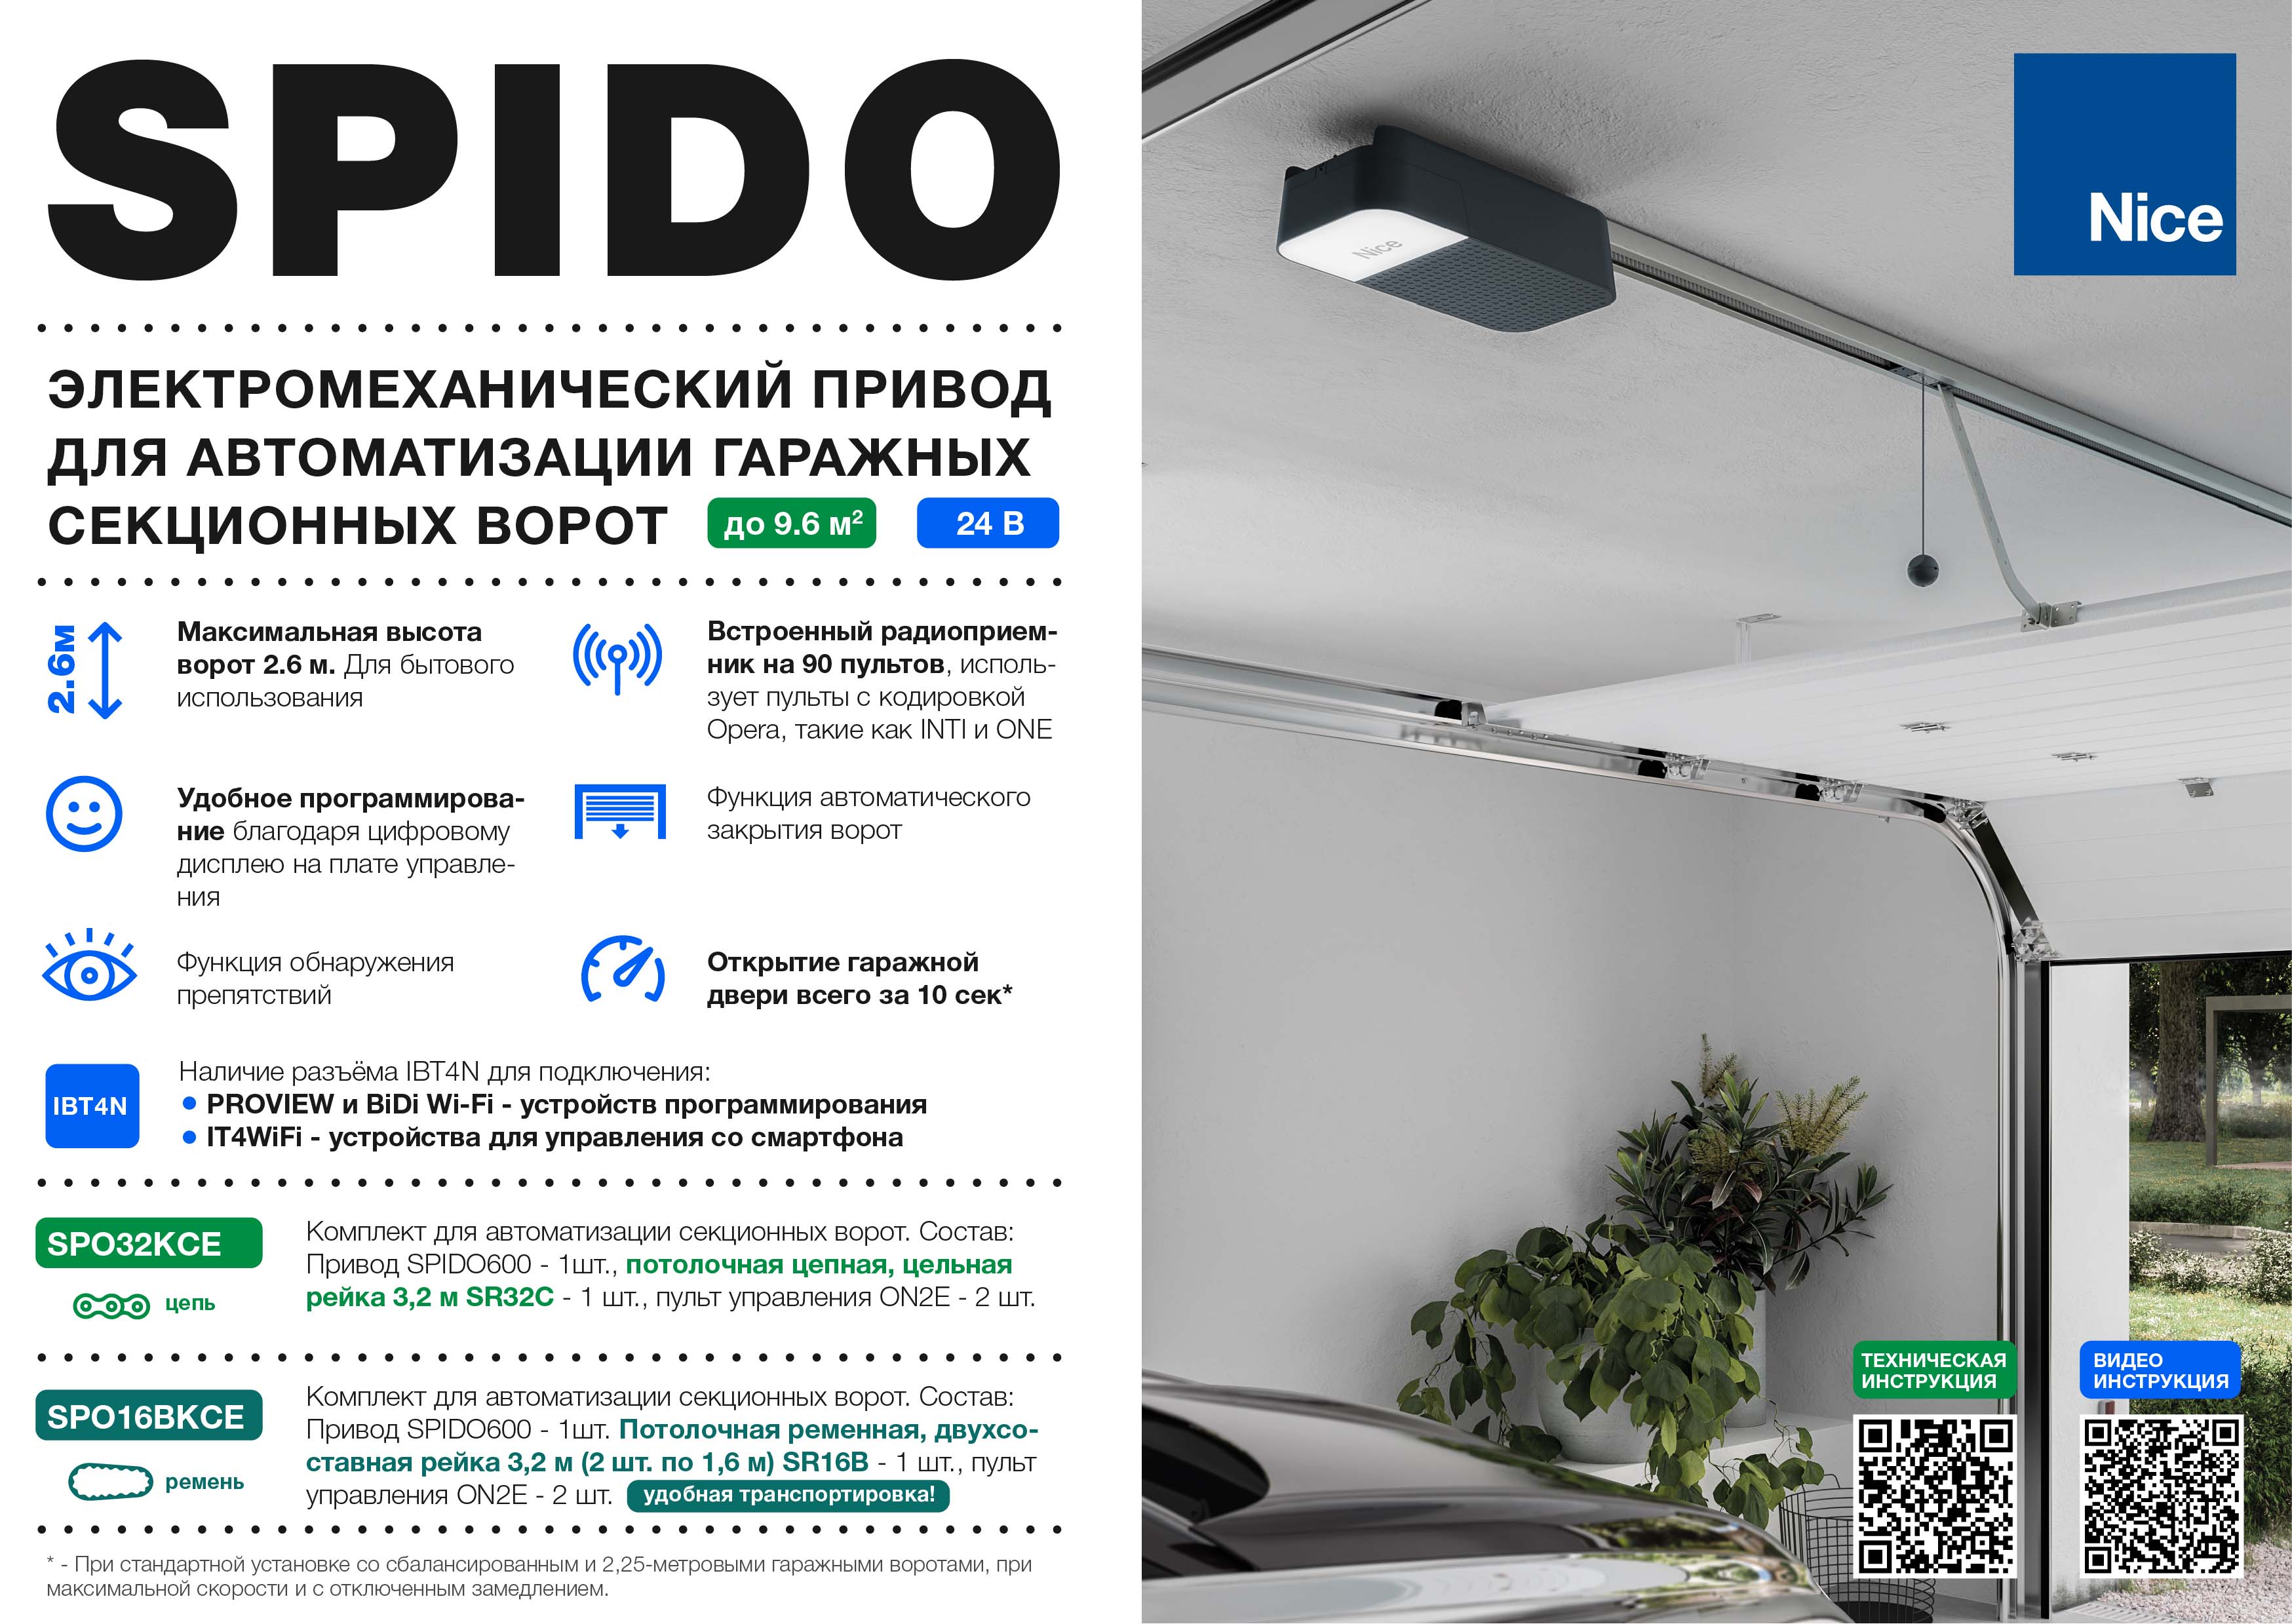 Nice SPIDO — электромеханический привод  для автоматизации гаражных  секционных ворот